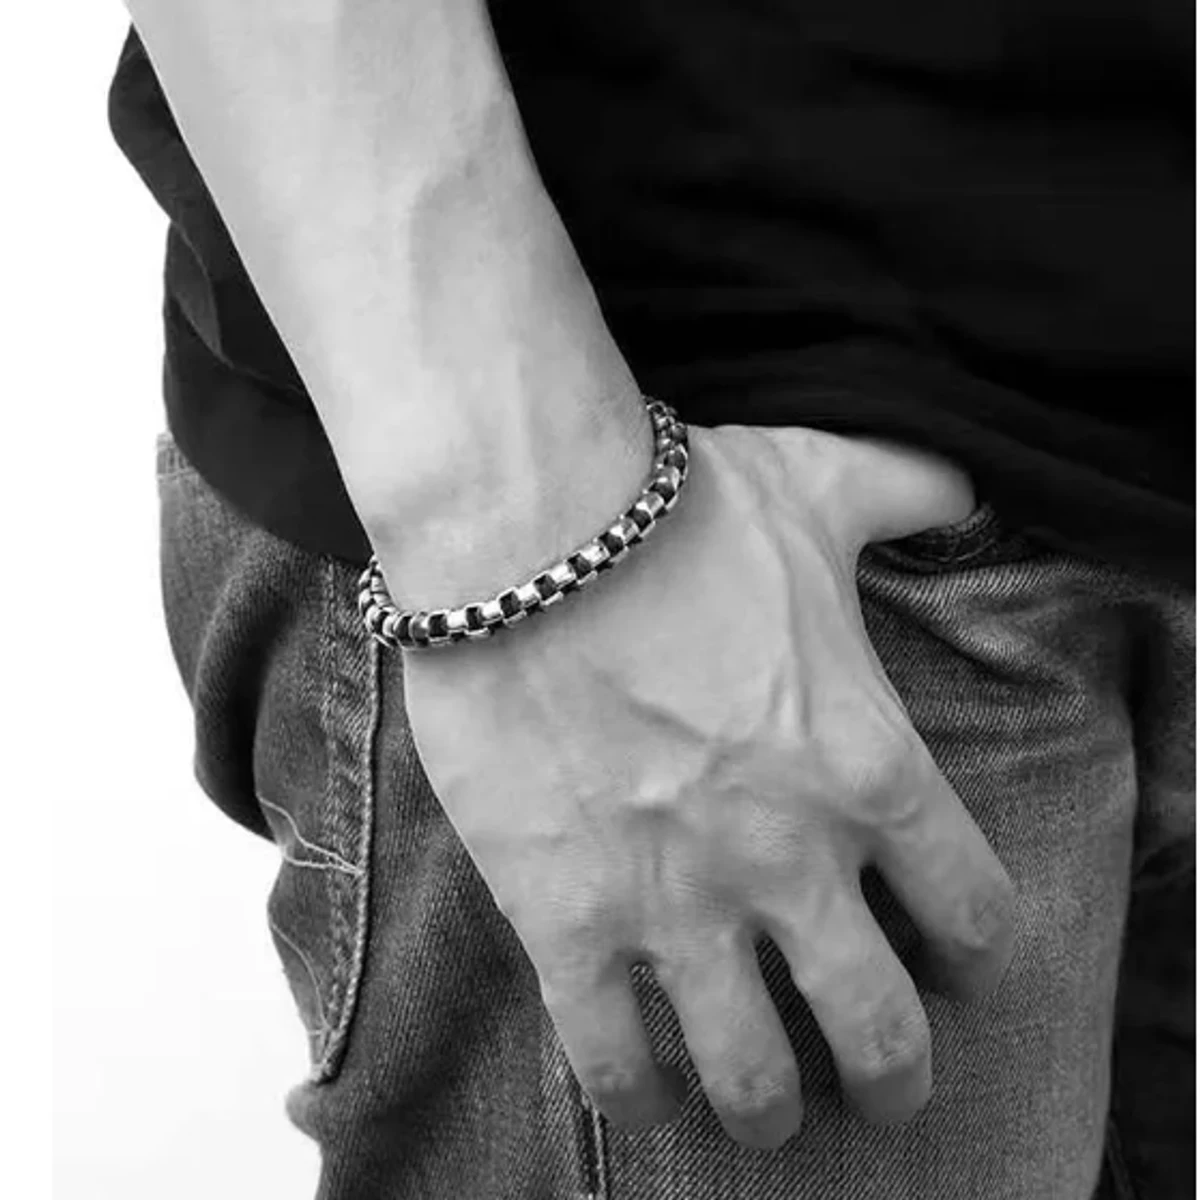 Box Chain Bracelet For Men-Stylish Bracelet For Men